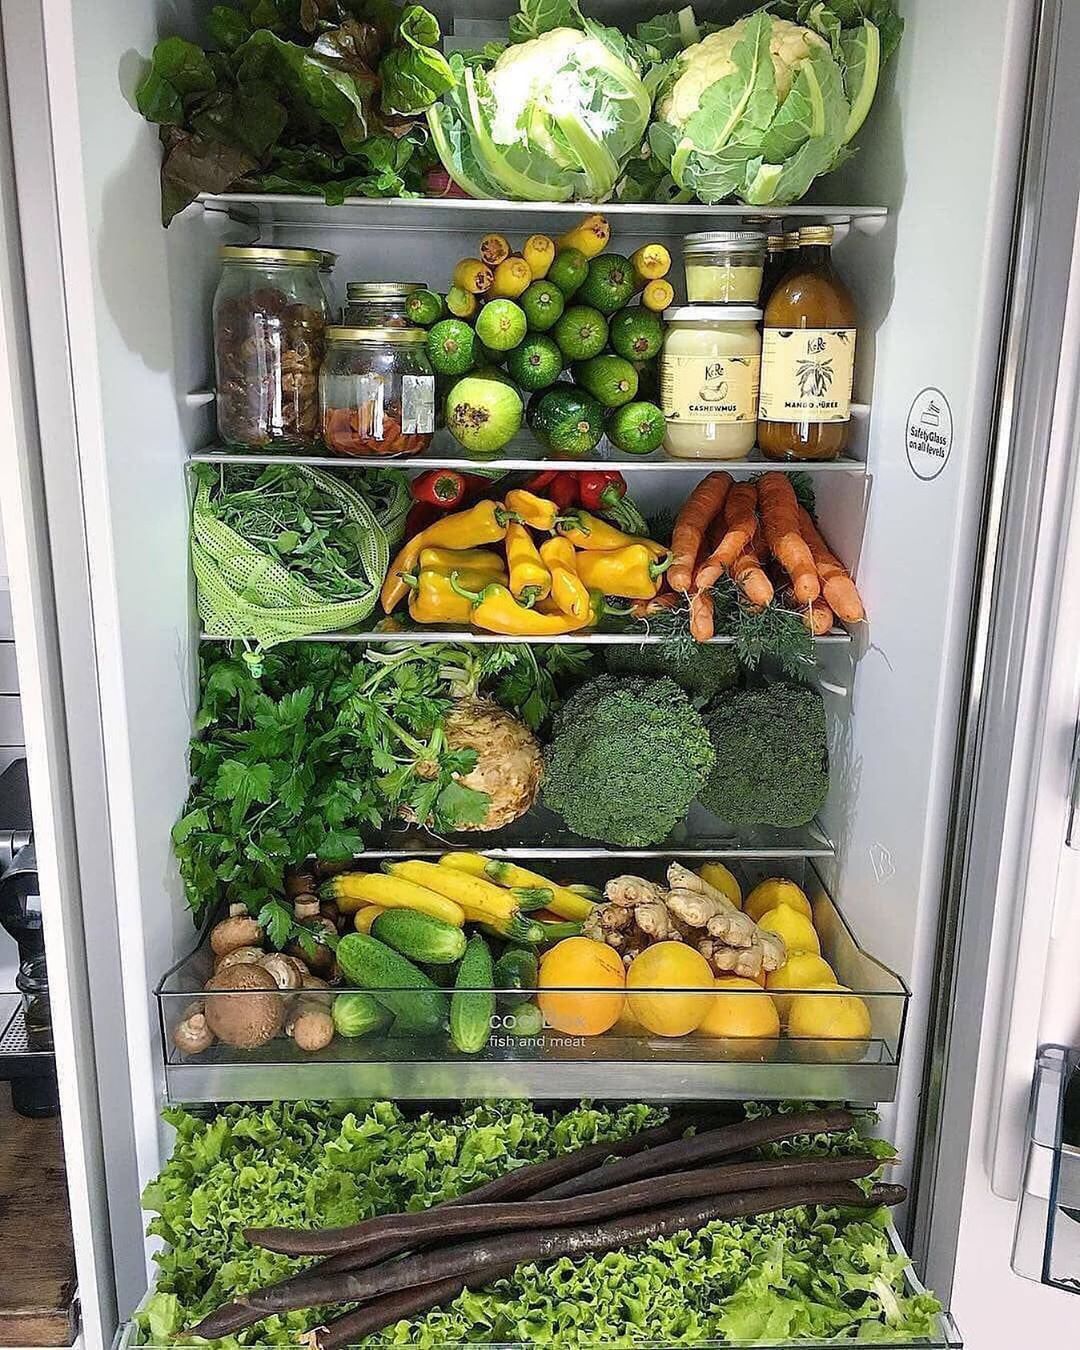 Холодильник здорового питания